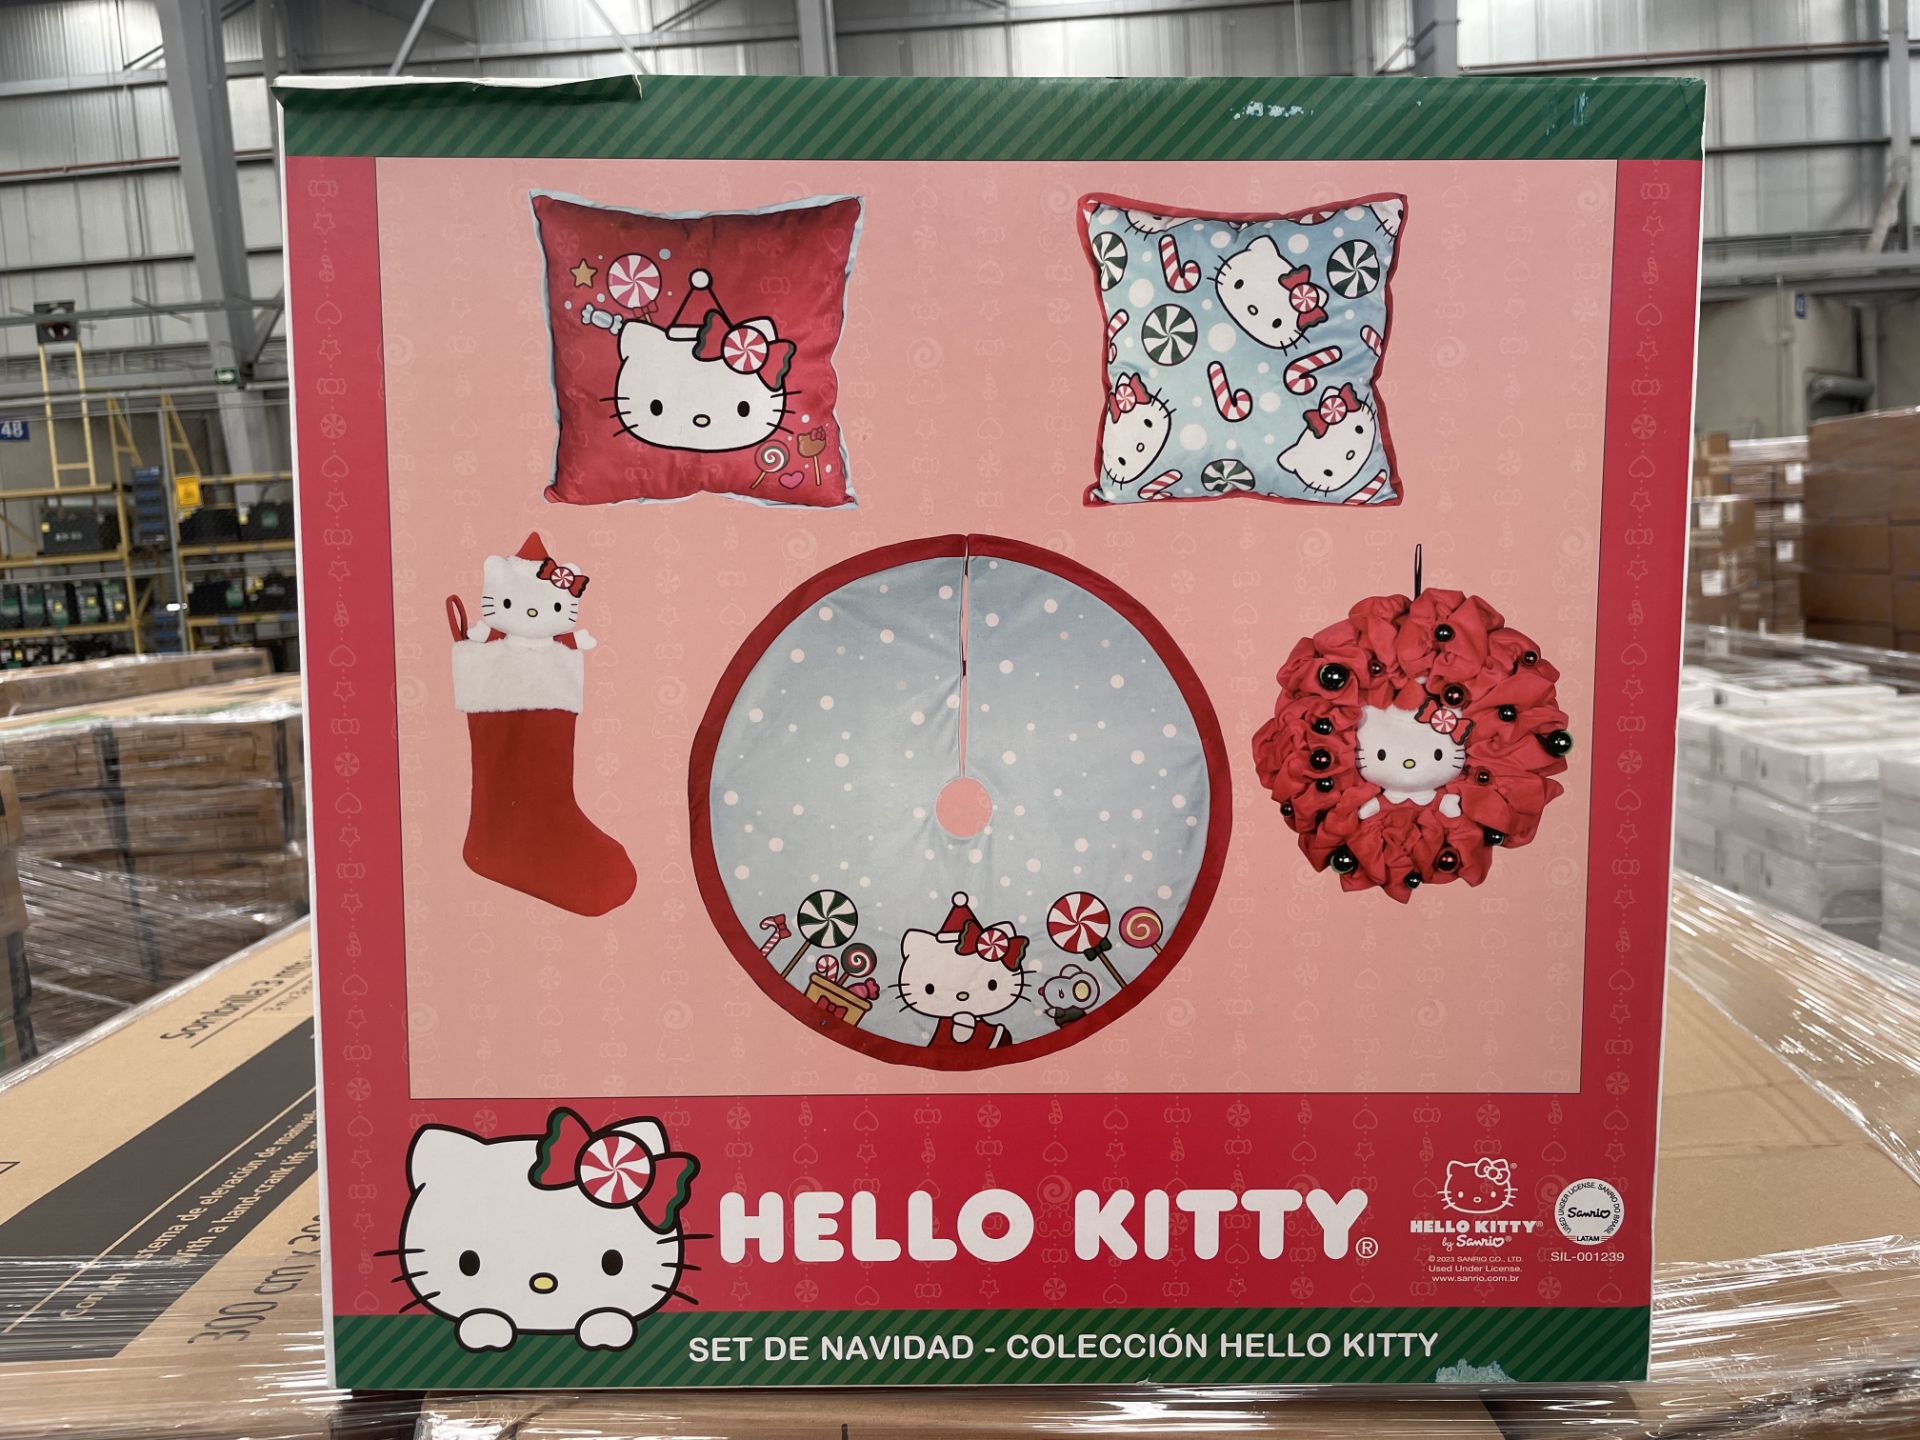 (Nuevo) Lote conformado por 29 set navideños, Colección Hello Kitty, marca SANRIO, incluye 2 almoha